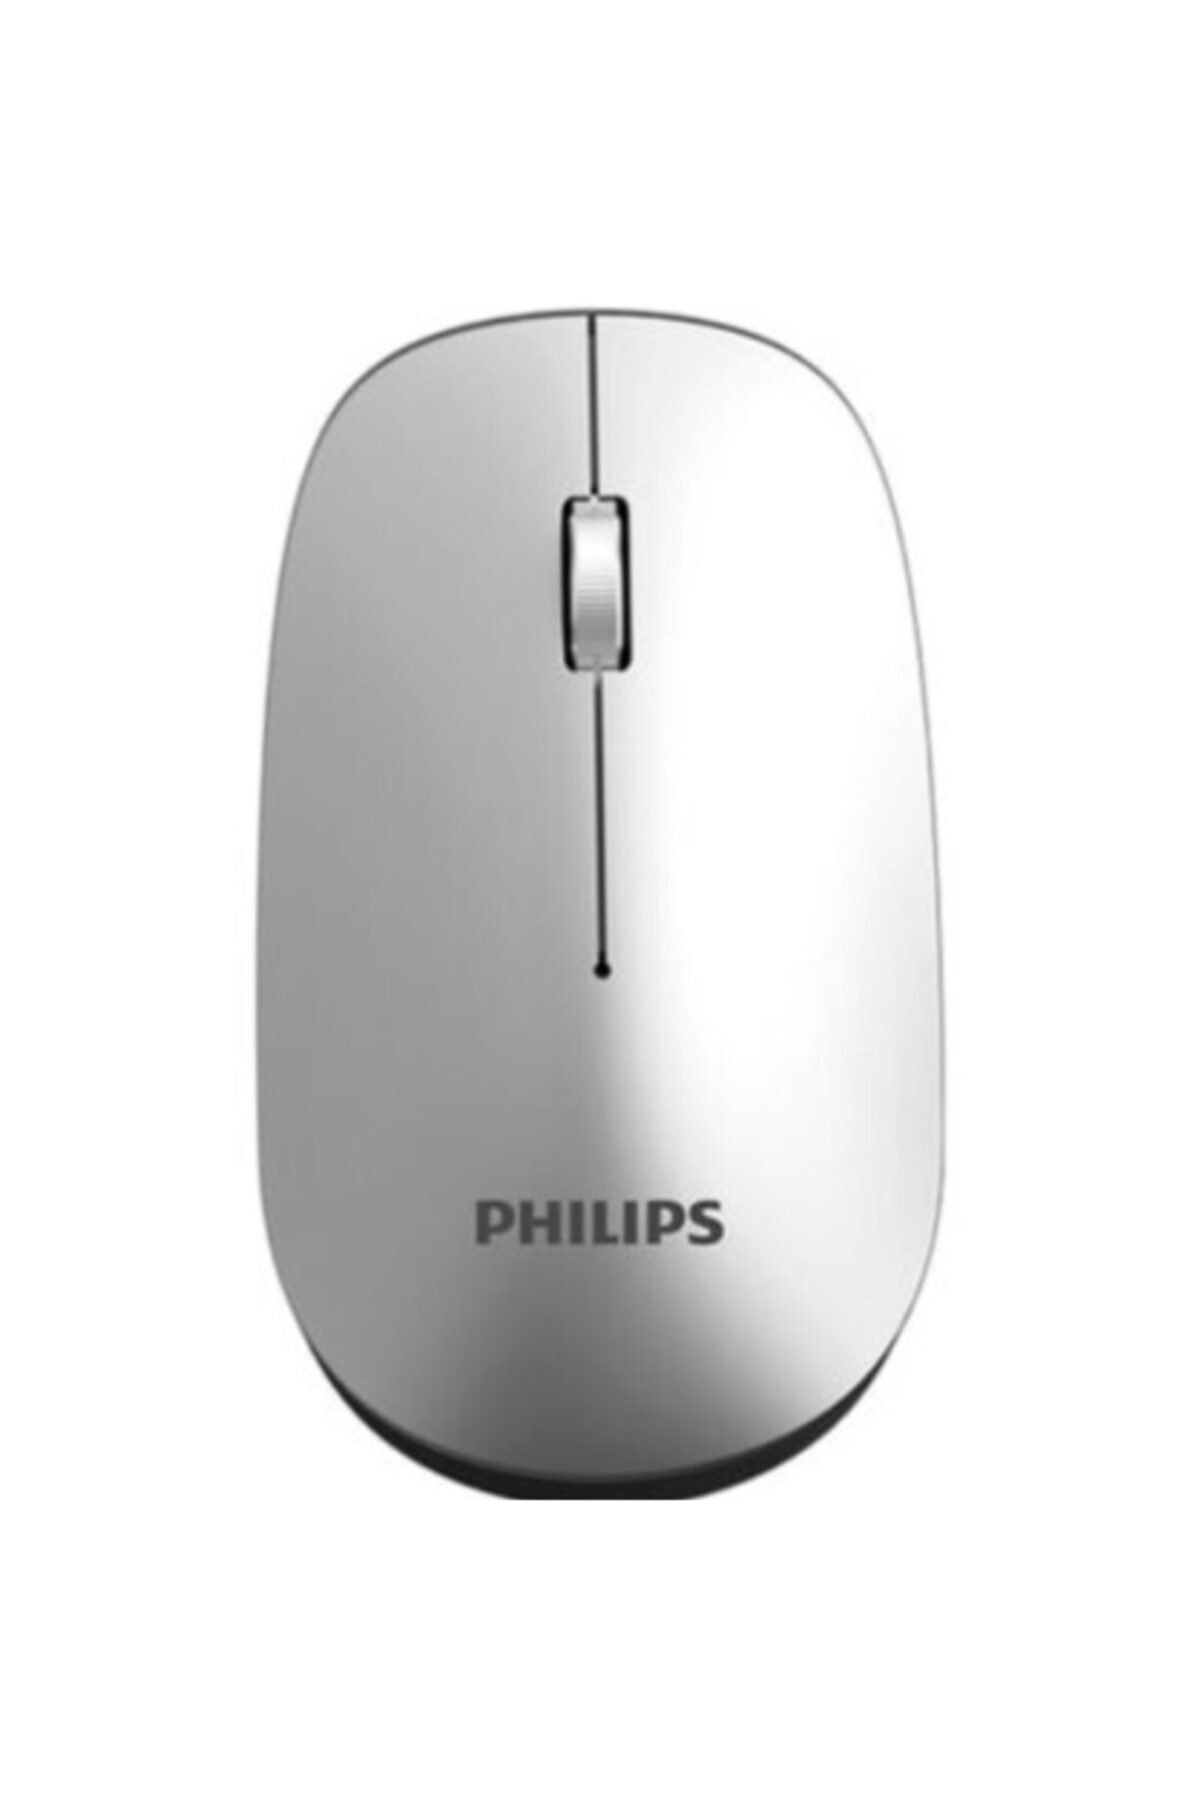 Philips Gümüş M305 Spk7305 Kablosuz Mouse Pil Hediyeli 2.4ghz 800/1000/1200/1600dpi